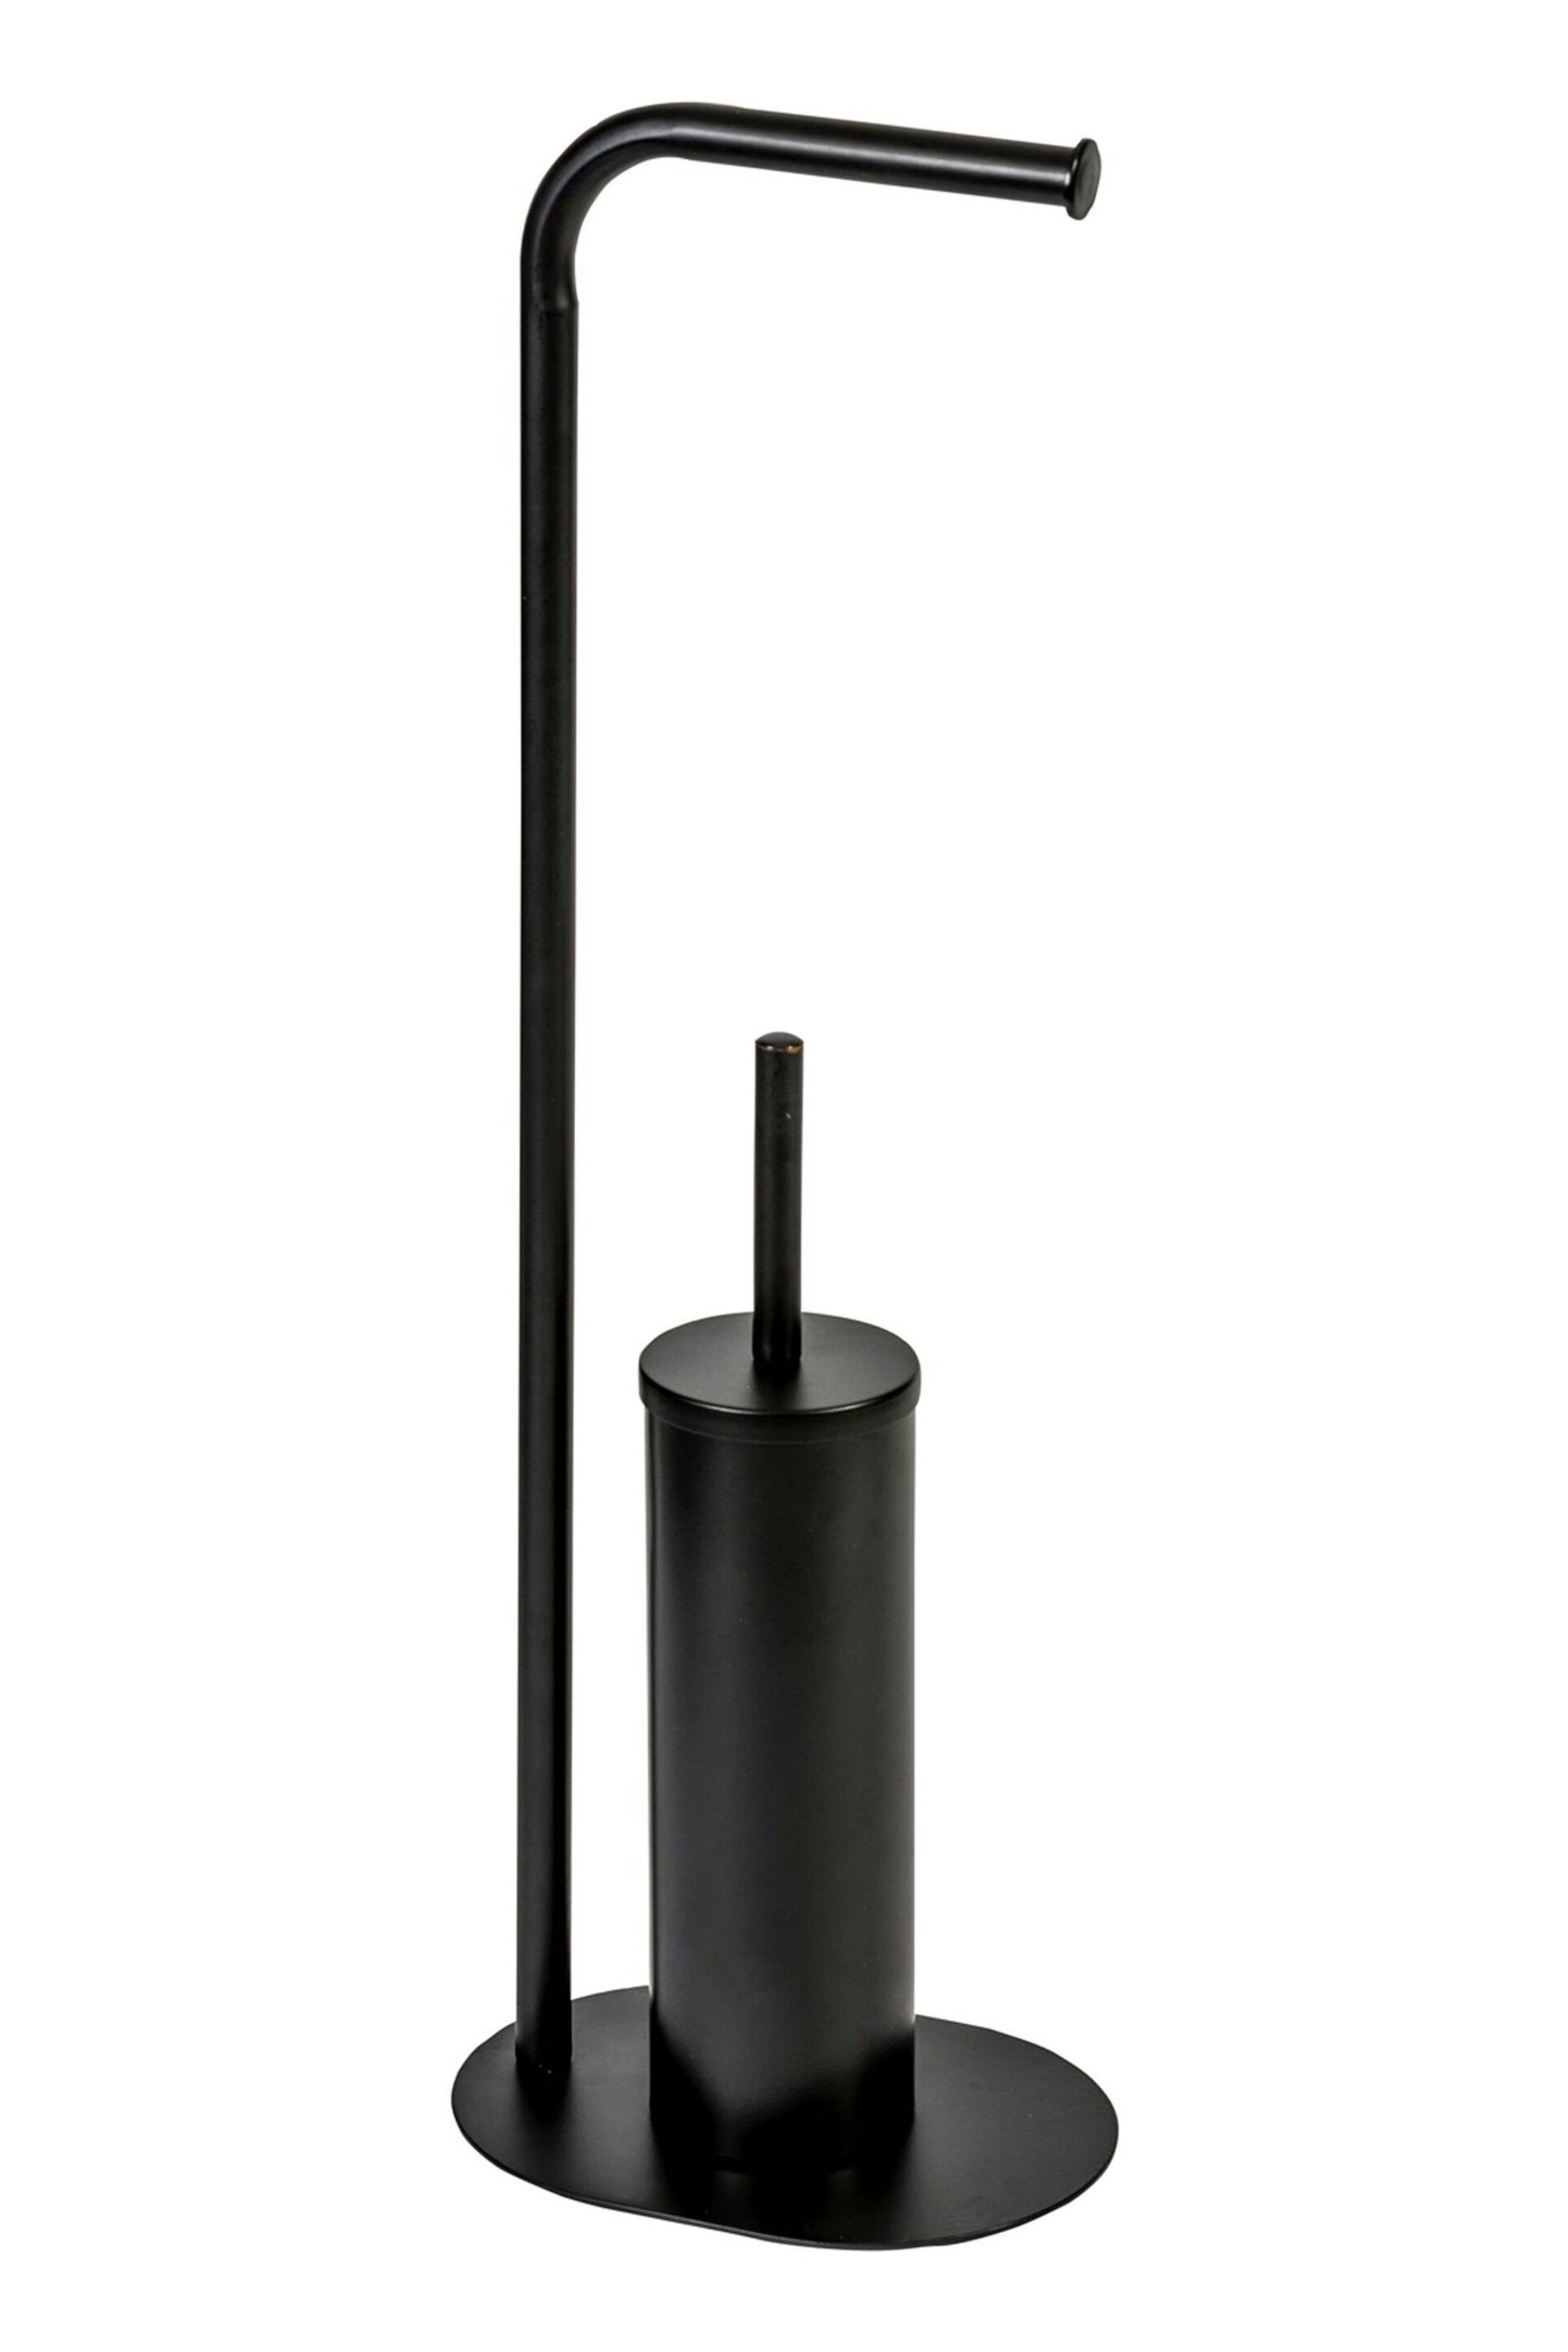 Showerdrape Black Aspen Freestanding Toilet Roll Holder and Brush Holder - Image 4 of 4